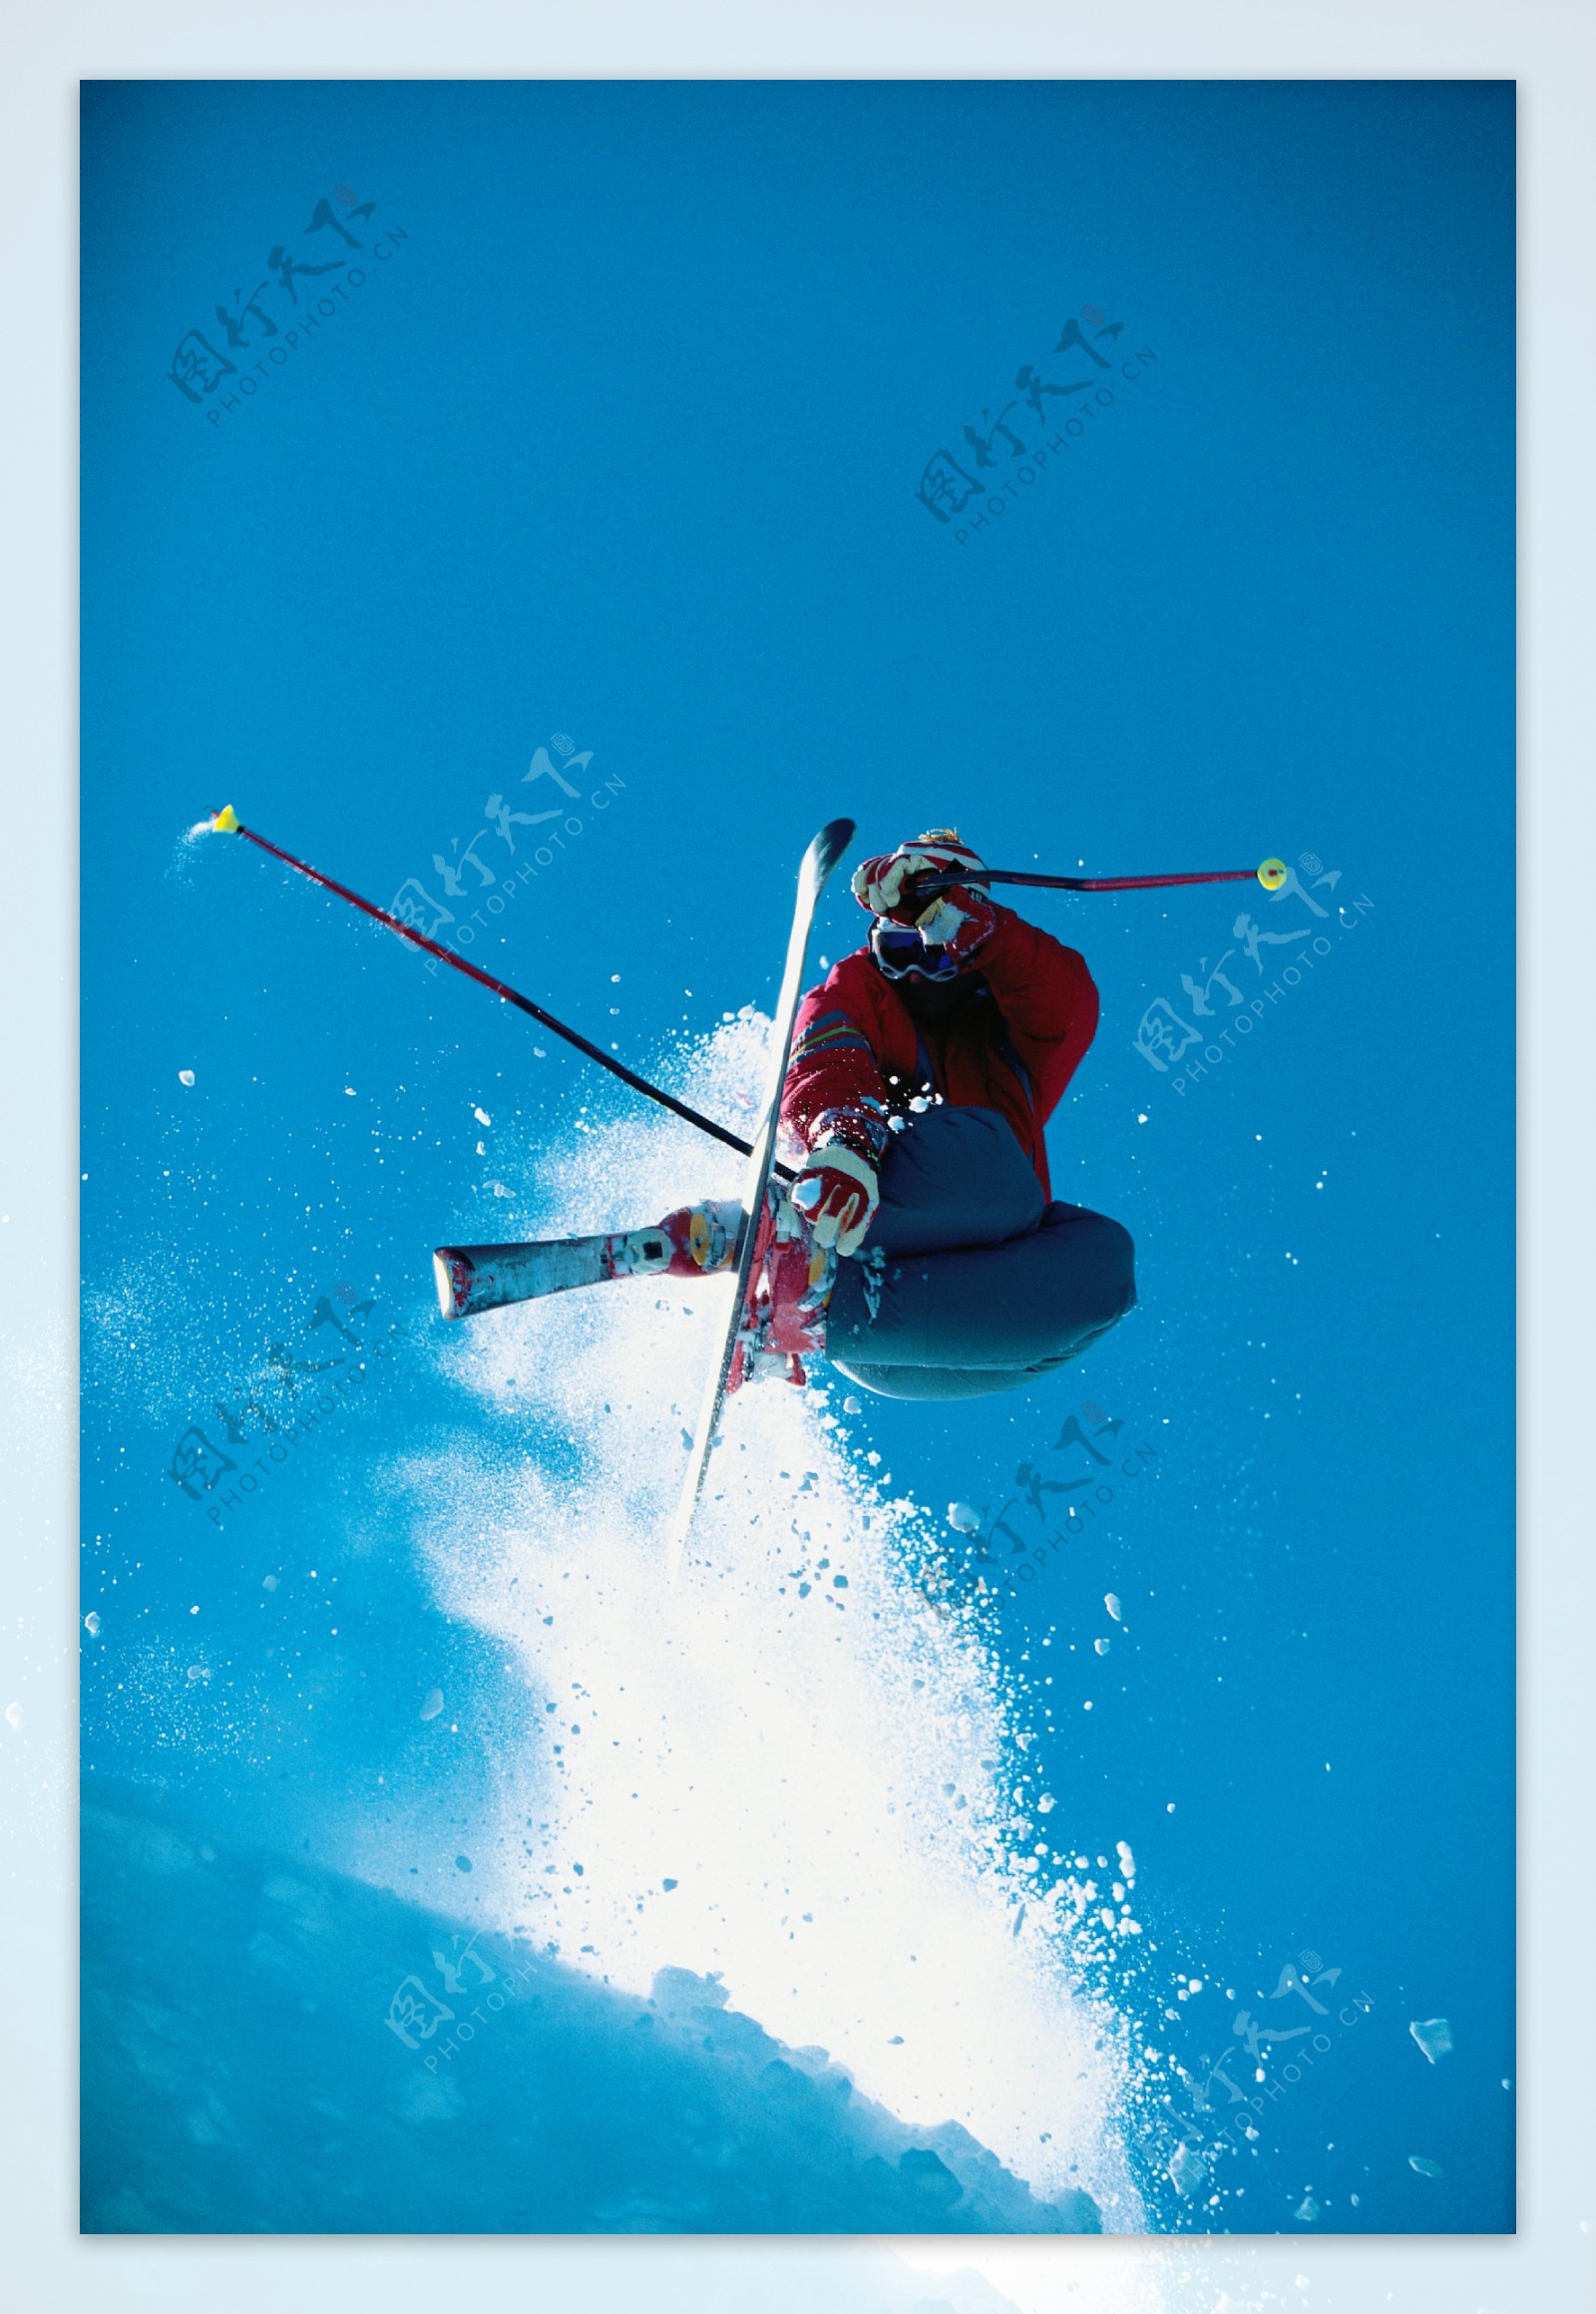 双板滑雪飞起瞬间